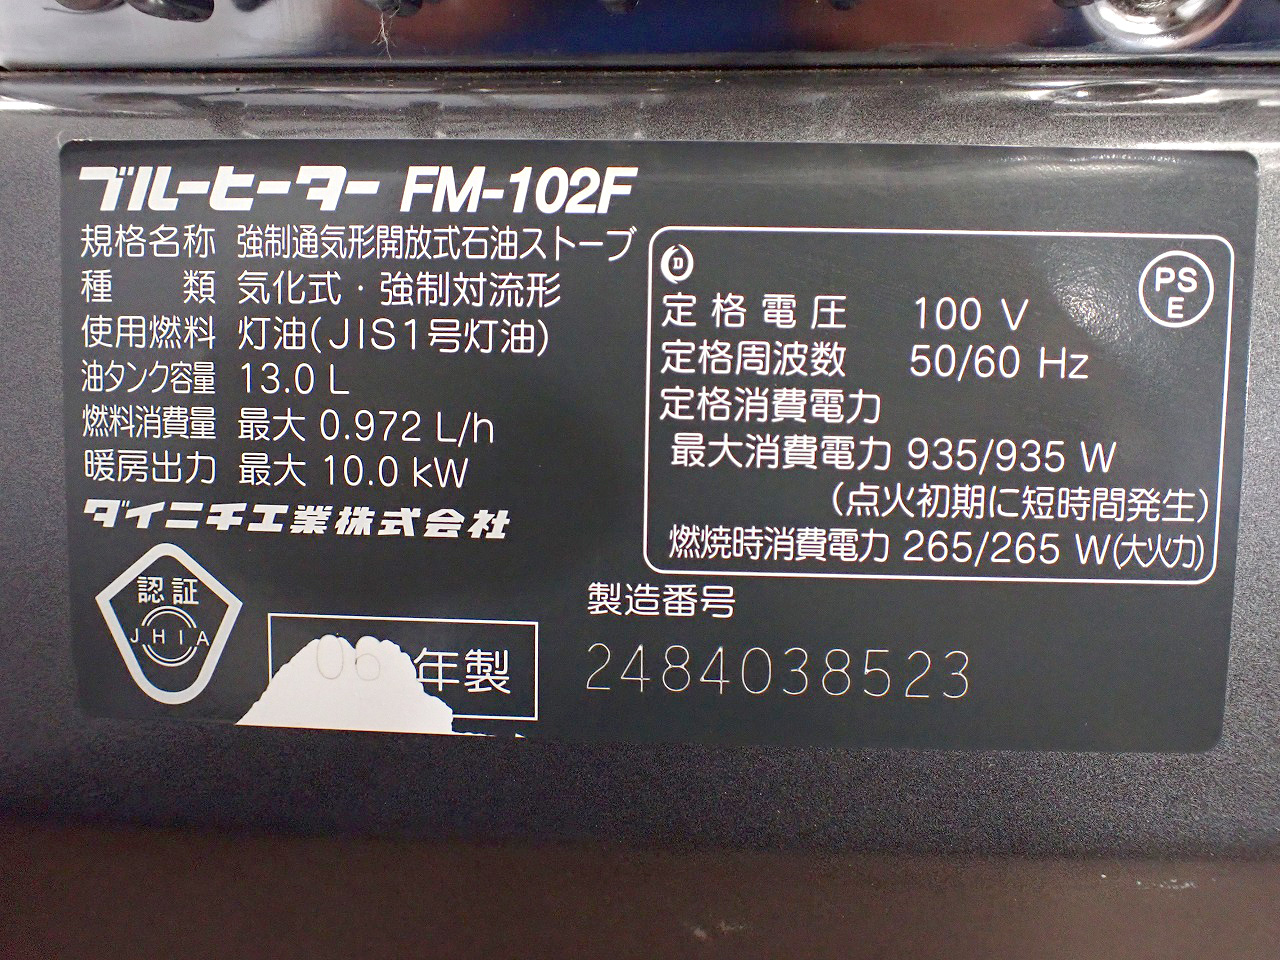 FM-102F